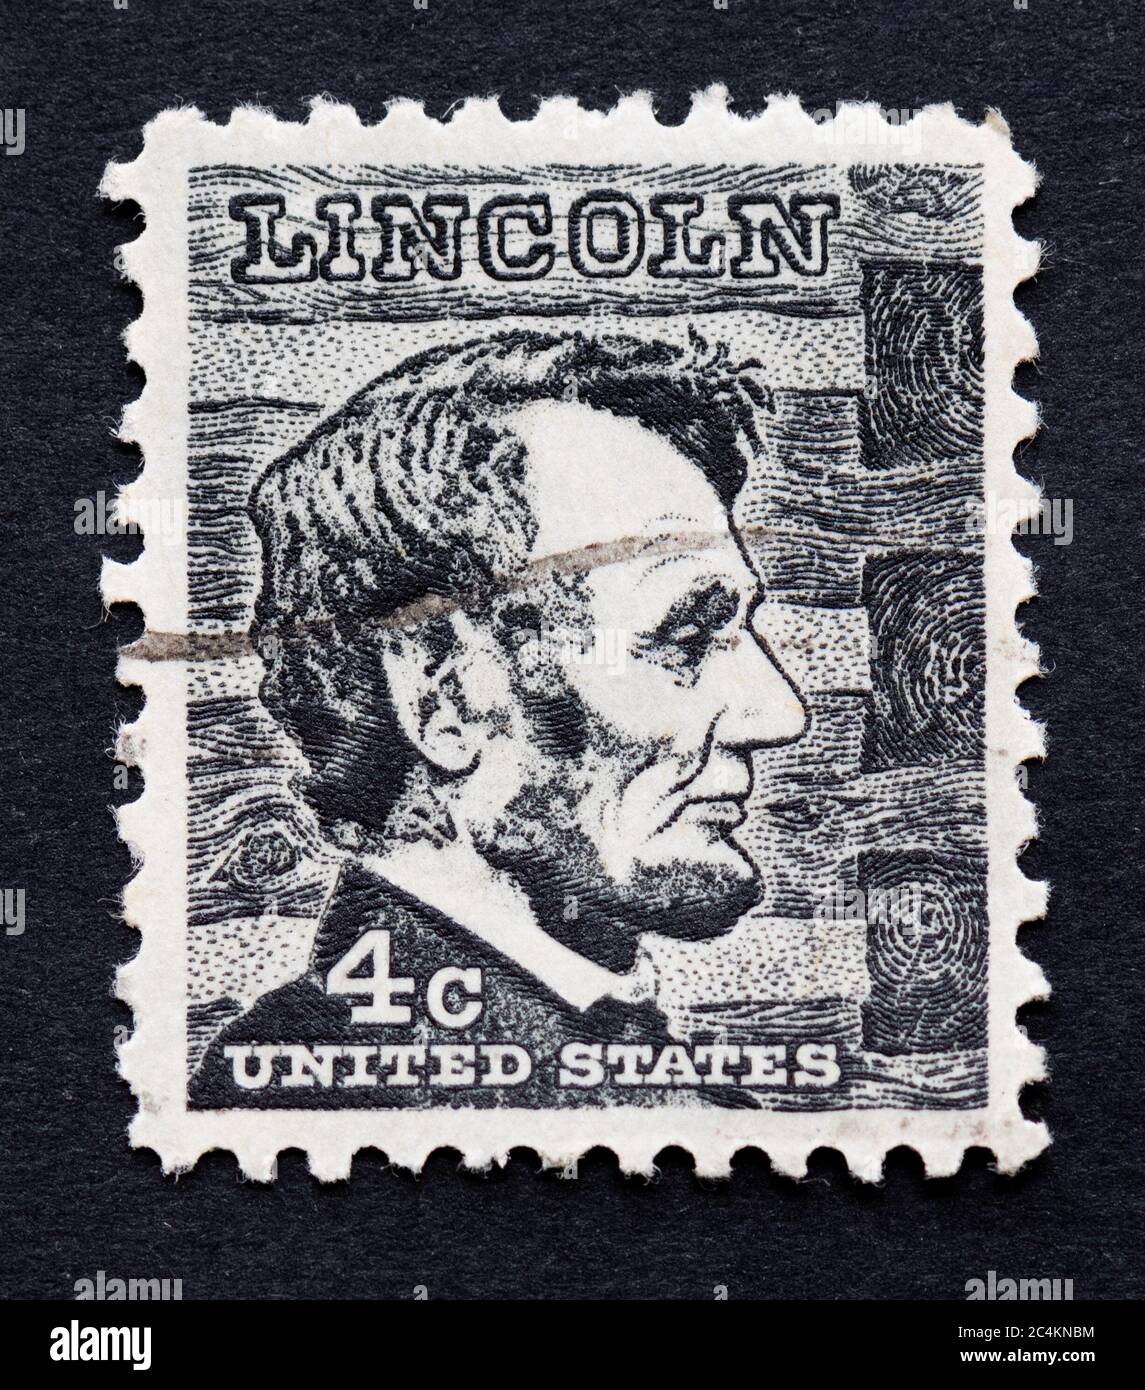 Abraham Lincoln 4c 1965 schwarze Briefmarke aus prominenter americans-Serie Stockfoto